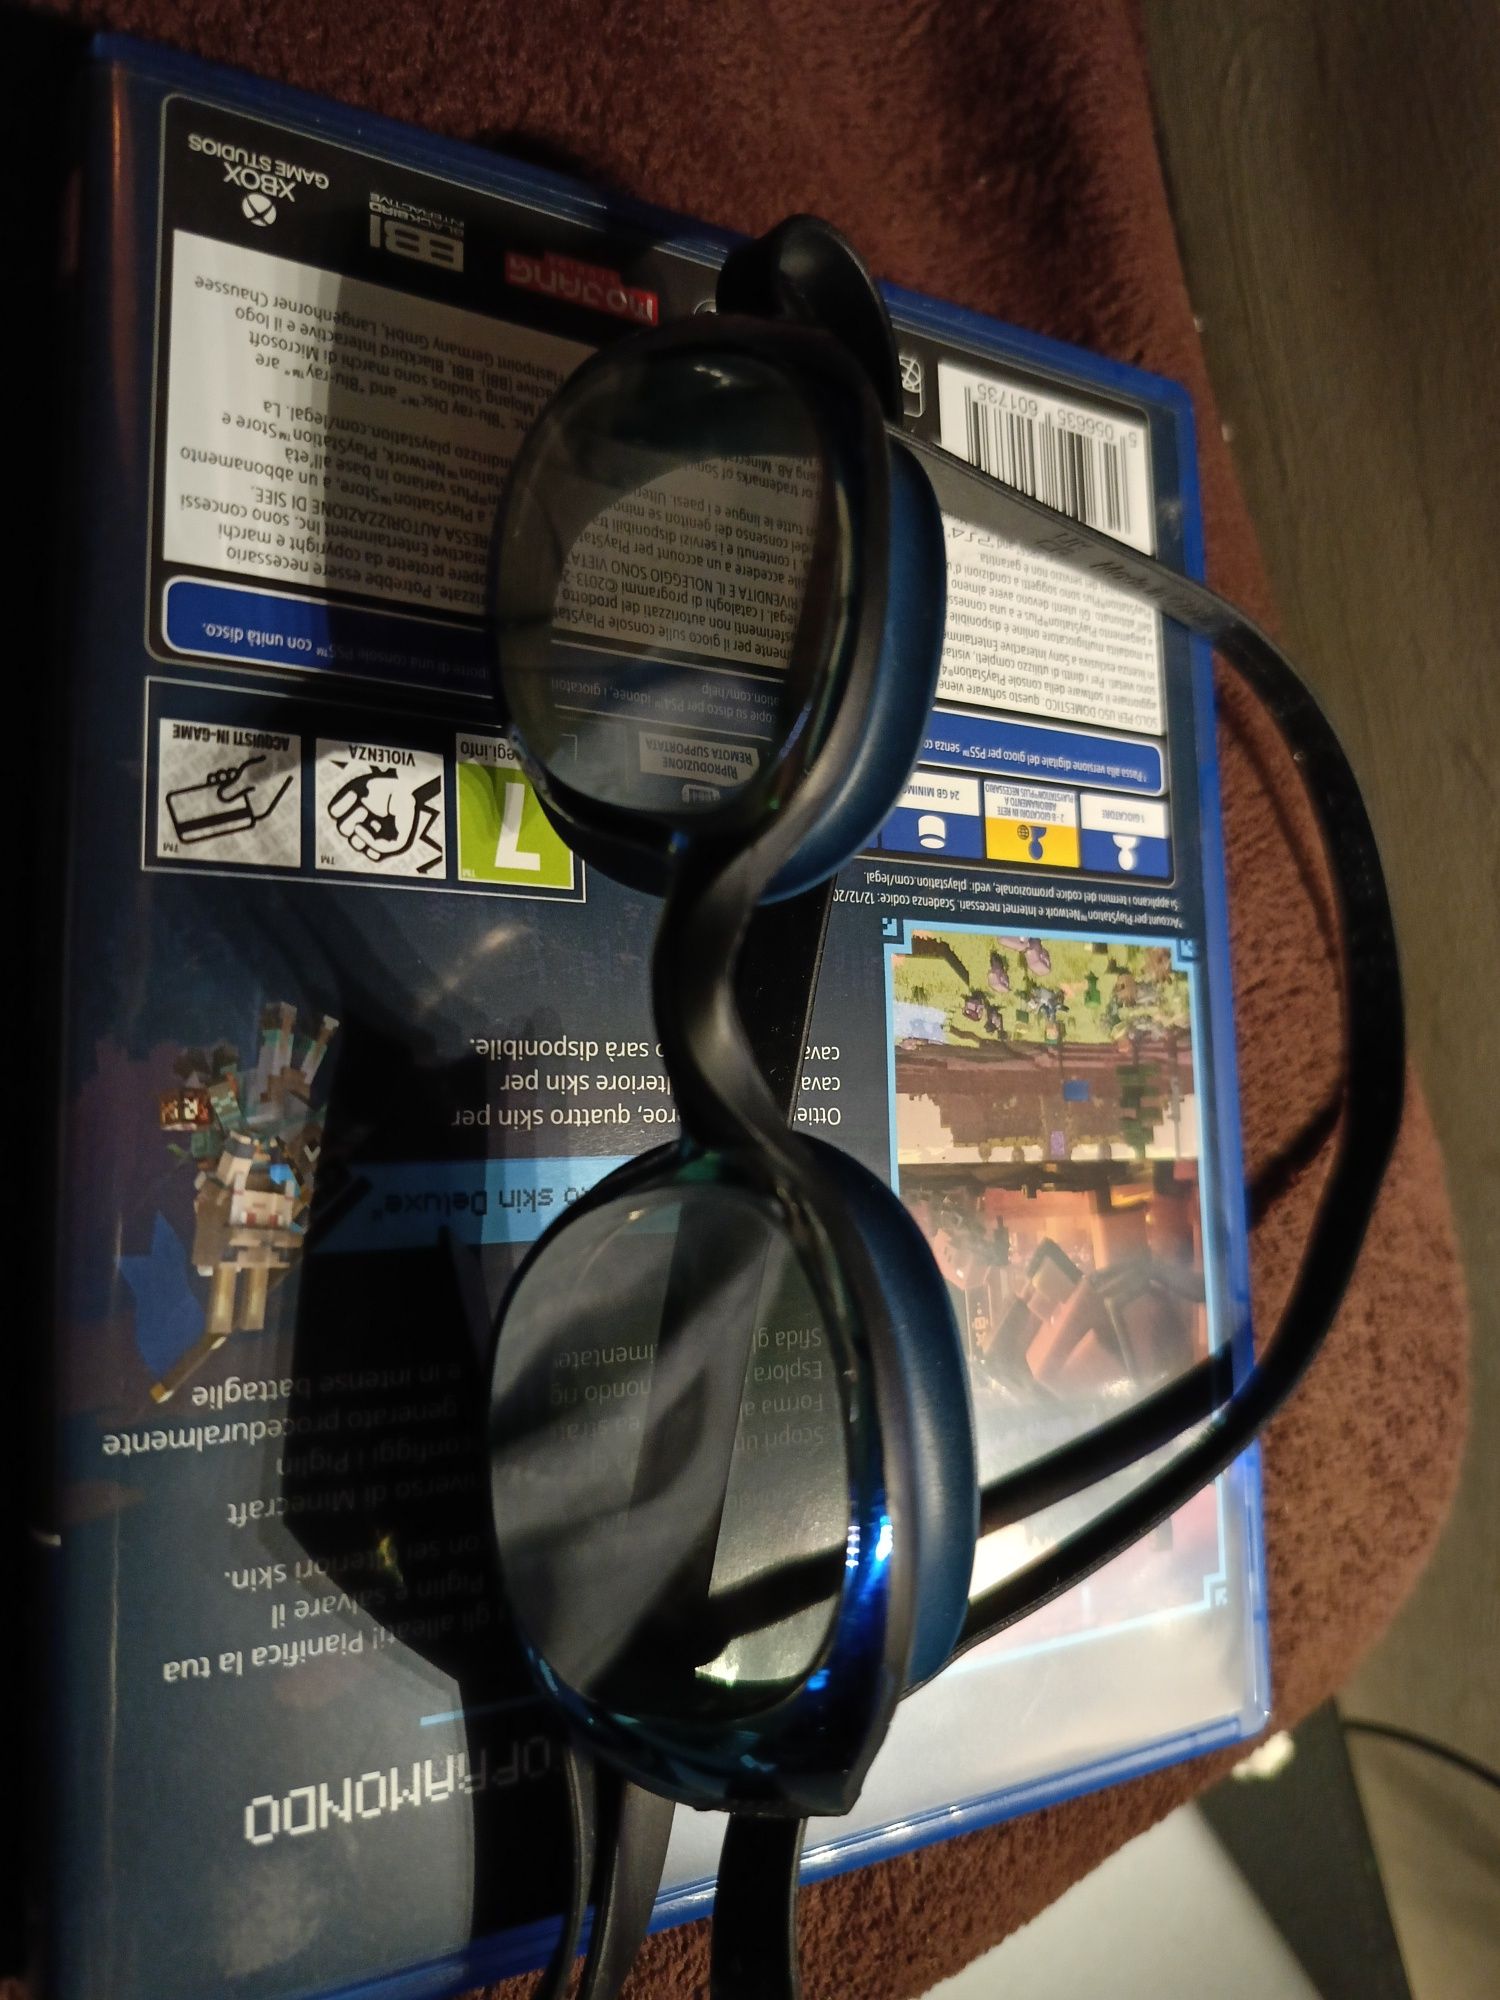 Okularki pływackie Nabaiji Bfit lustrzane szkła uzywane w bdb stanie